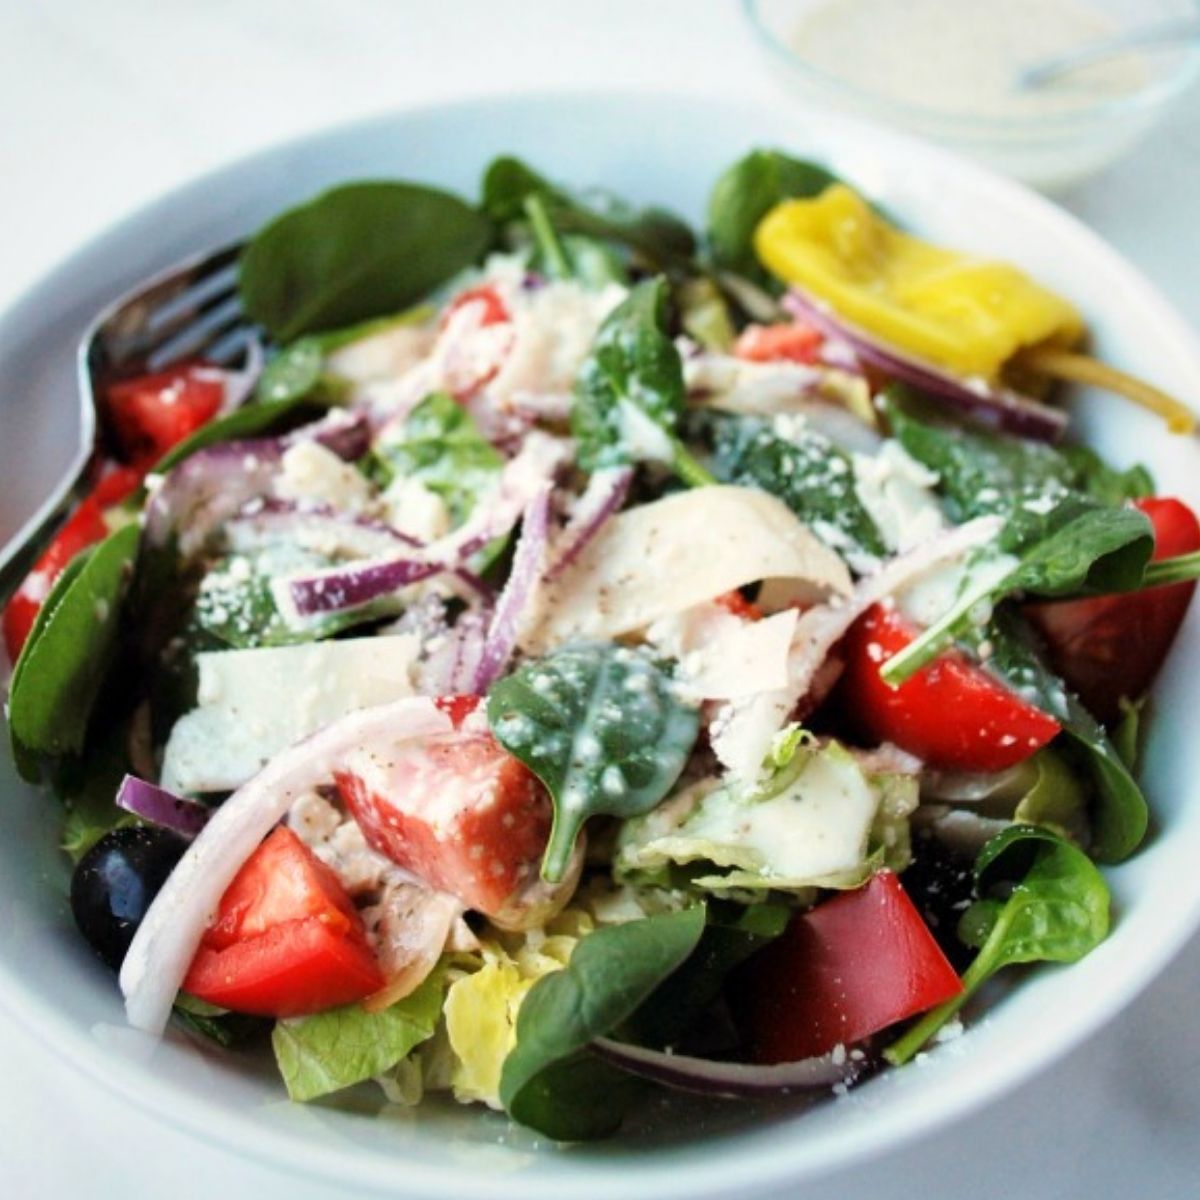 https://ameessavorydish.com/wp-content/uploads/2016/01/Copycat-Olive-Garden-salad-feature.jpg